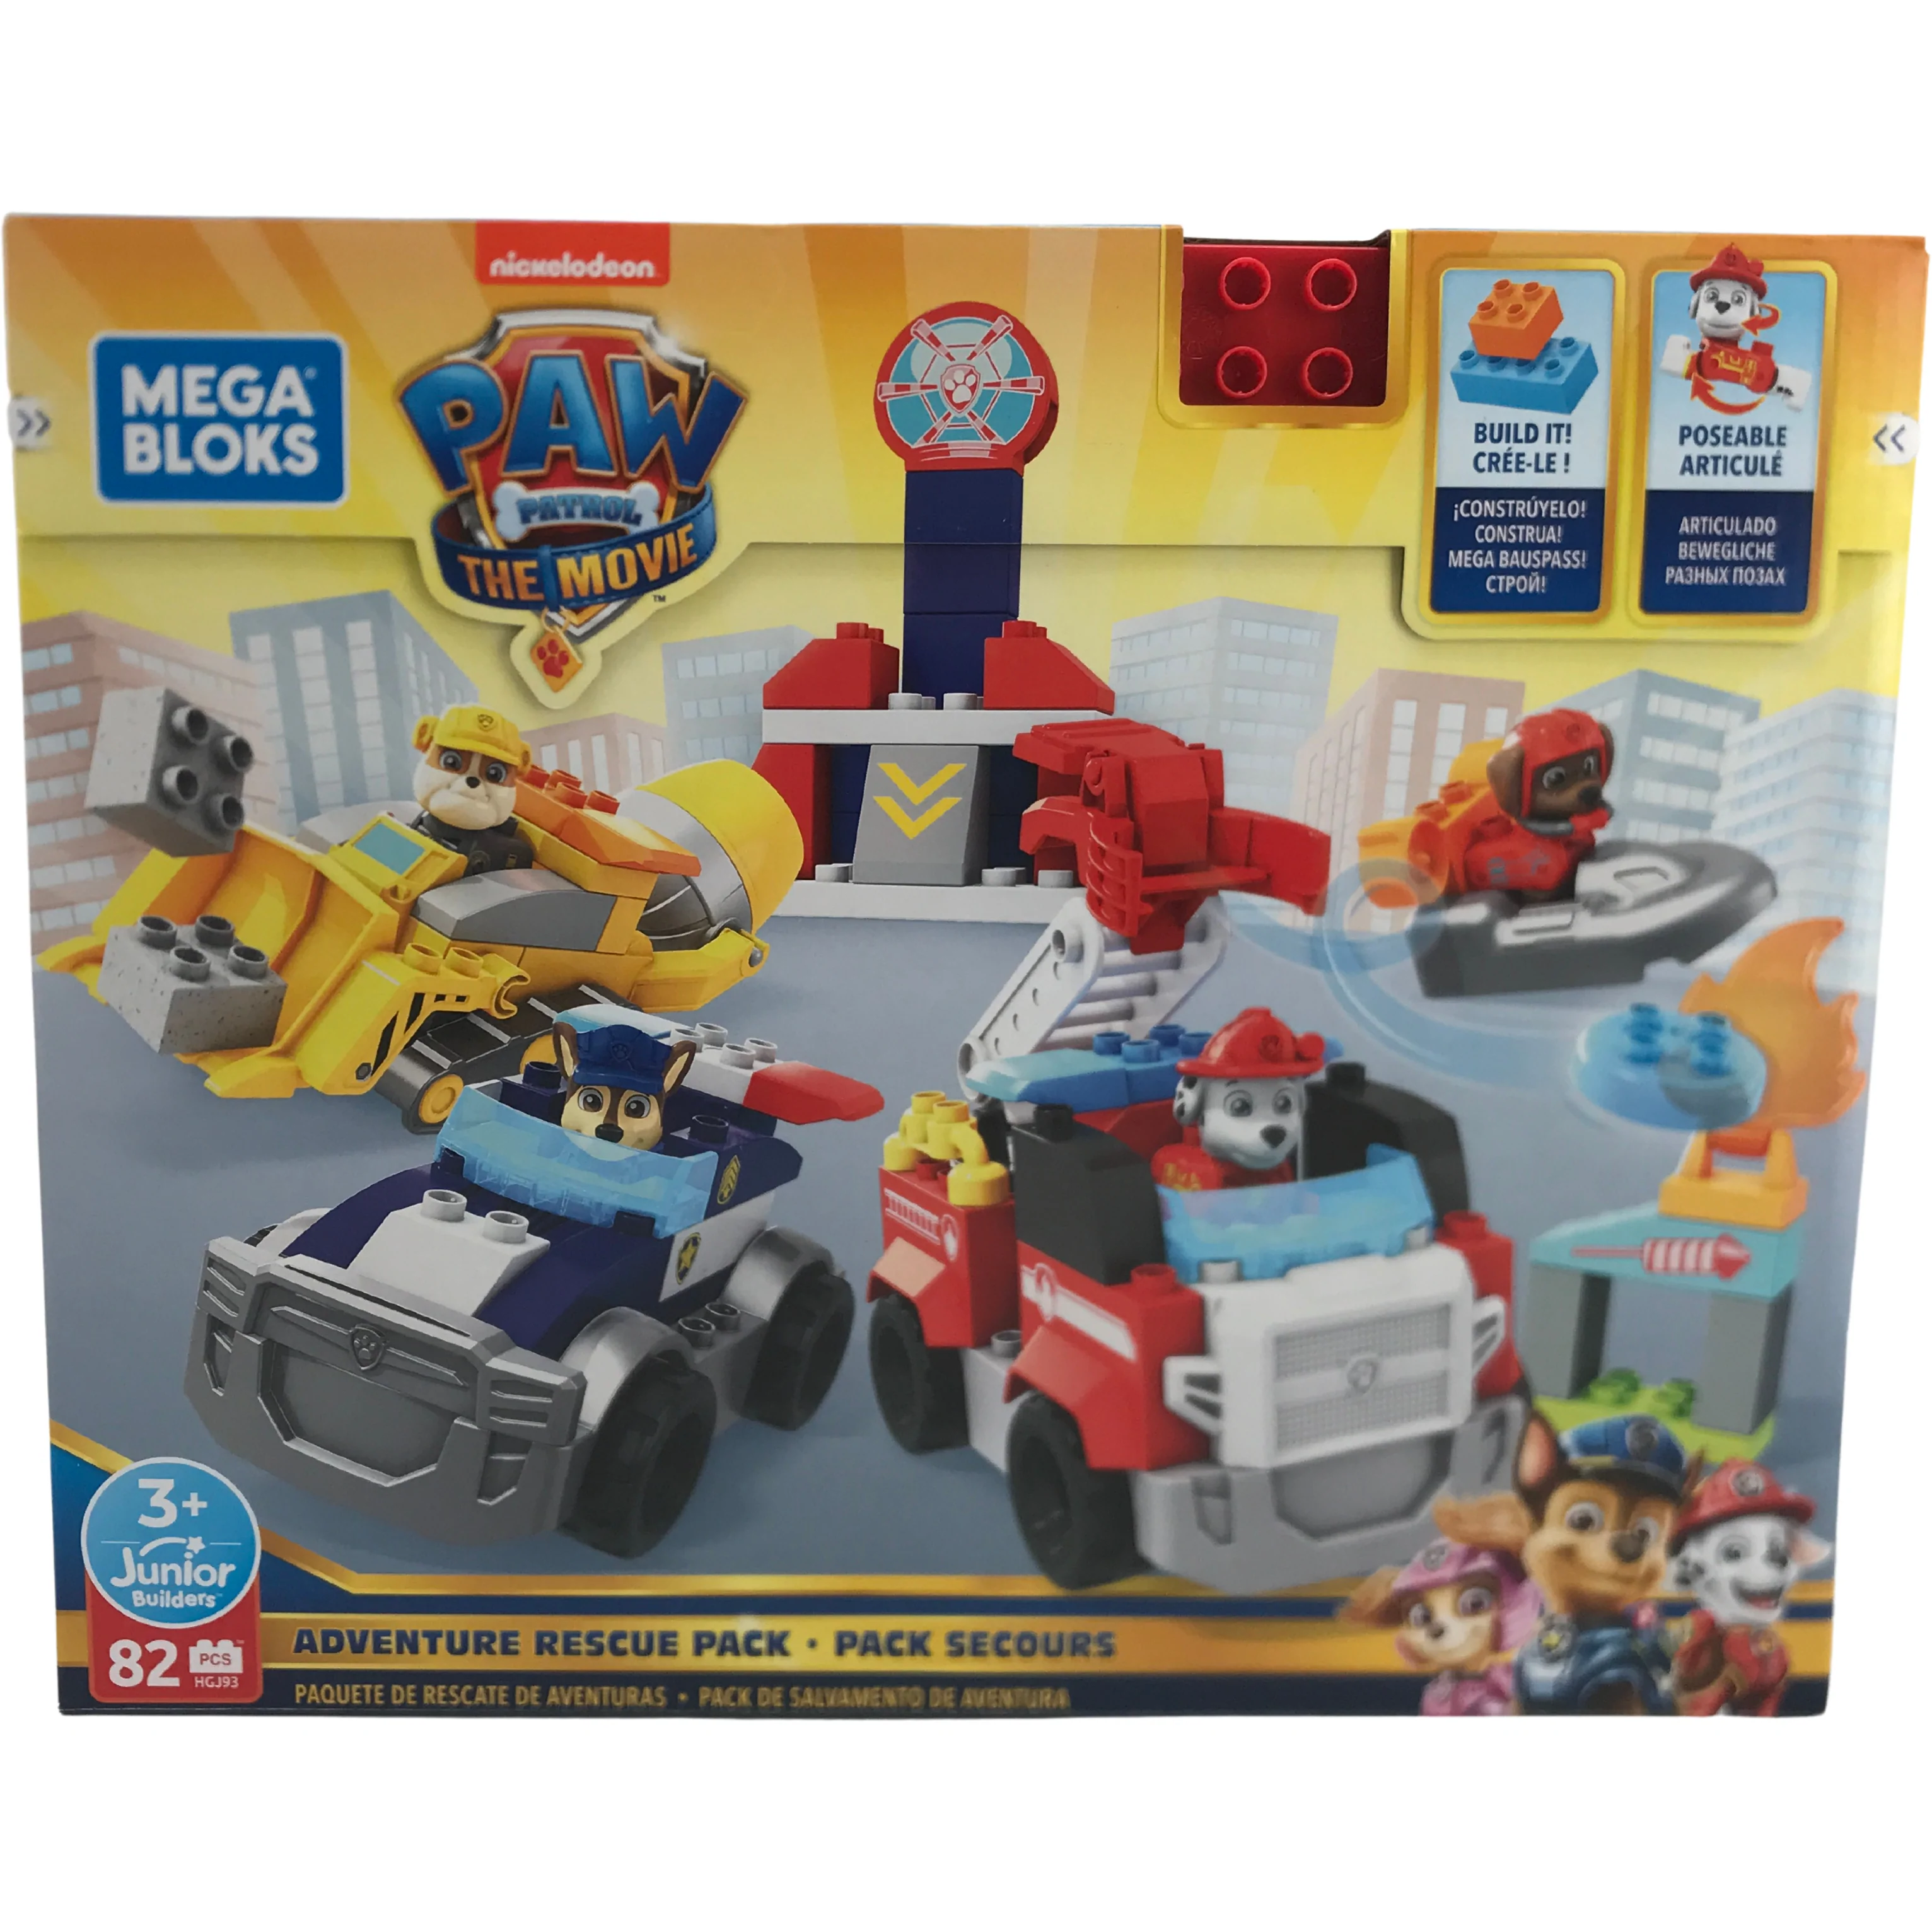 Paw Patrol Mega Bloks Set: Adventure Rescue Pack / 82 Pieces / Junior Builder